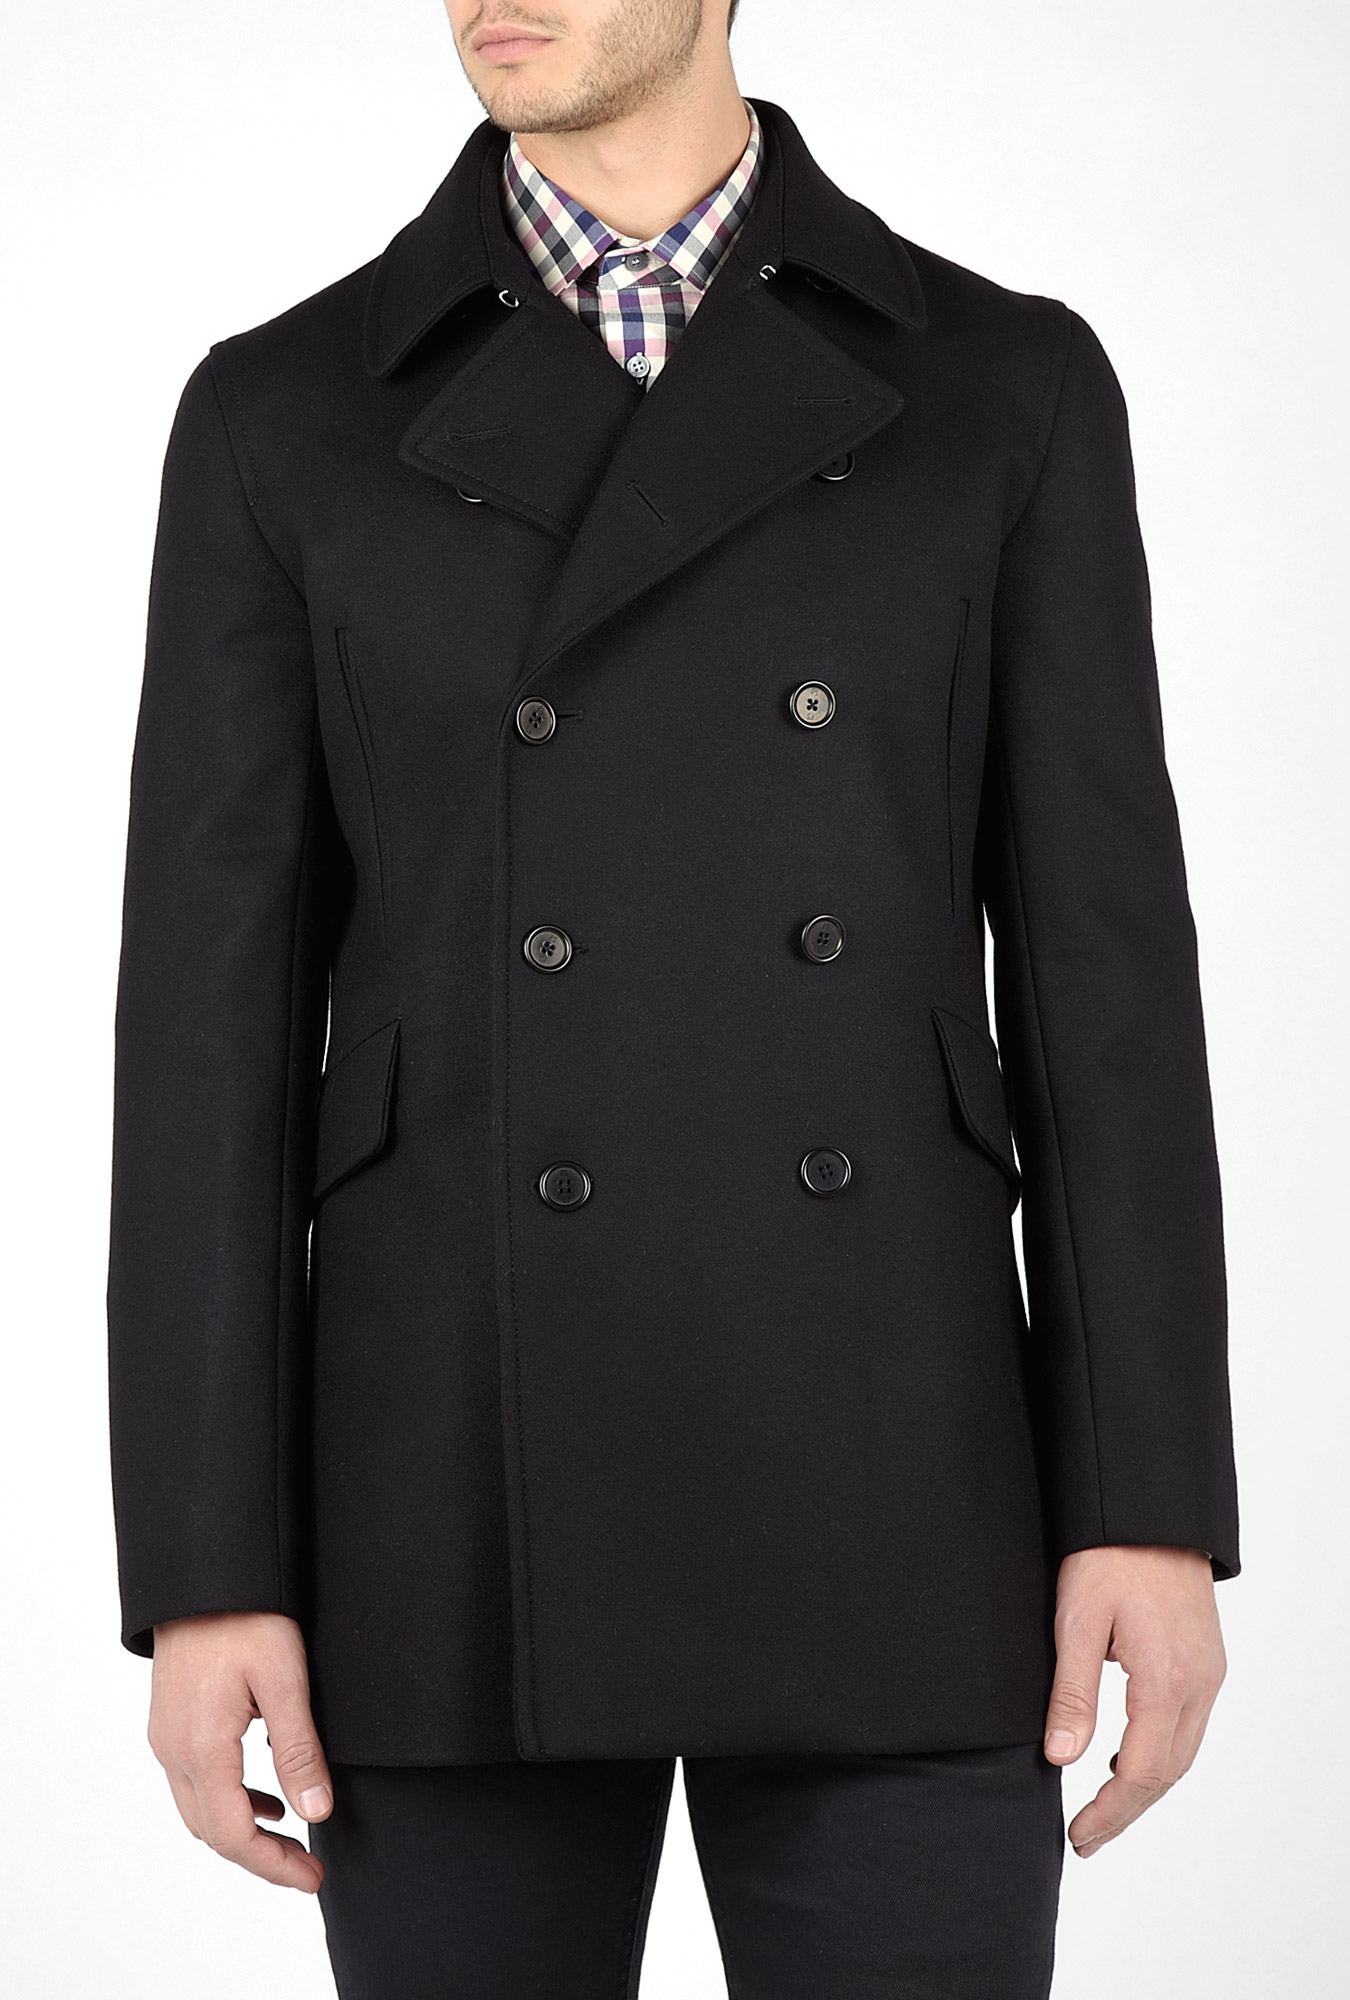 Ps By Paul Smith Black Melton Wool 3/4 Pea Coat in Black for Men | Lyst